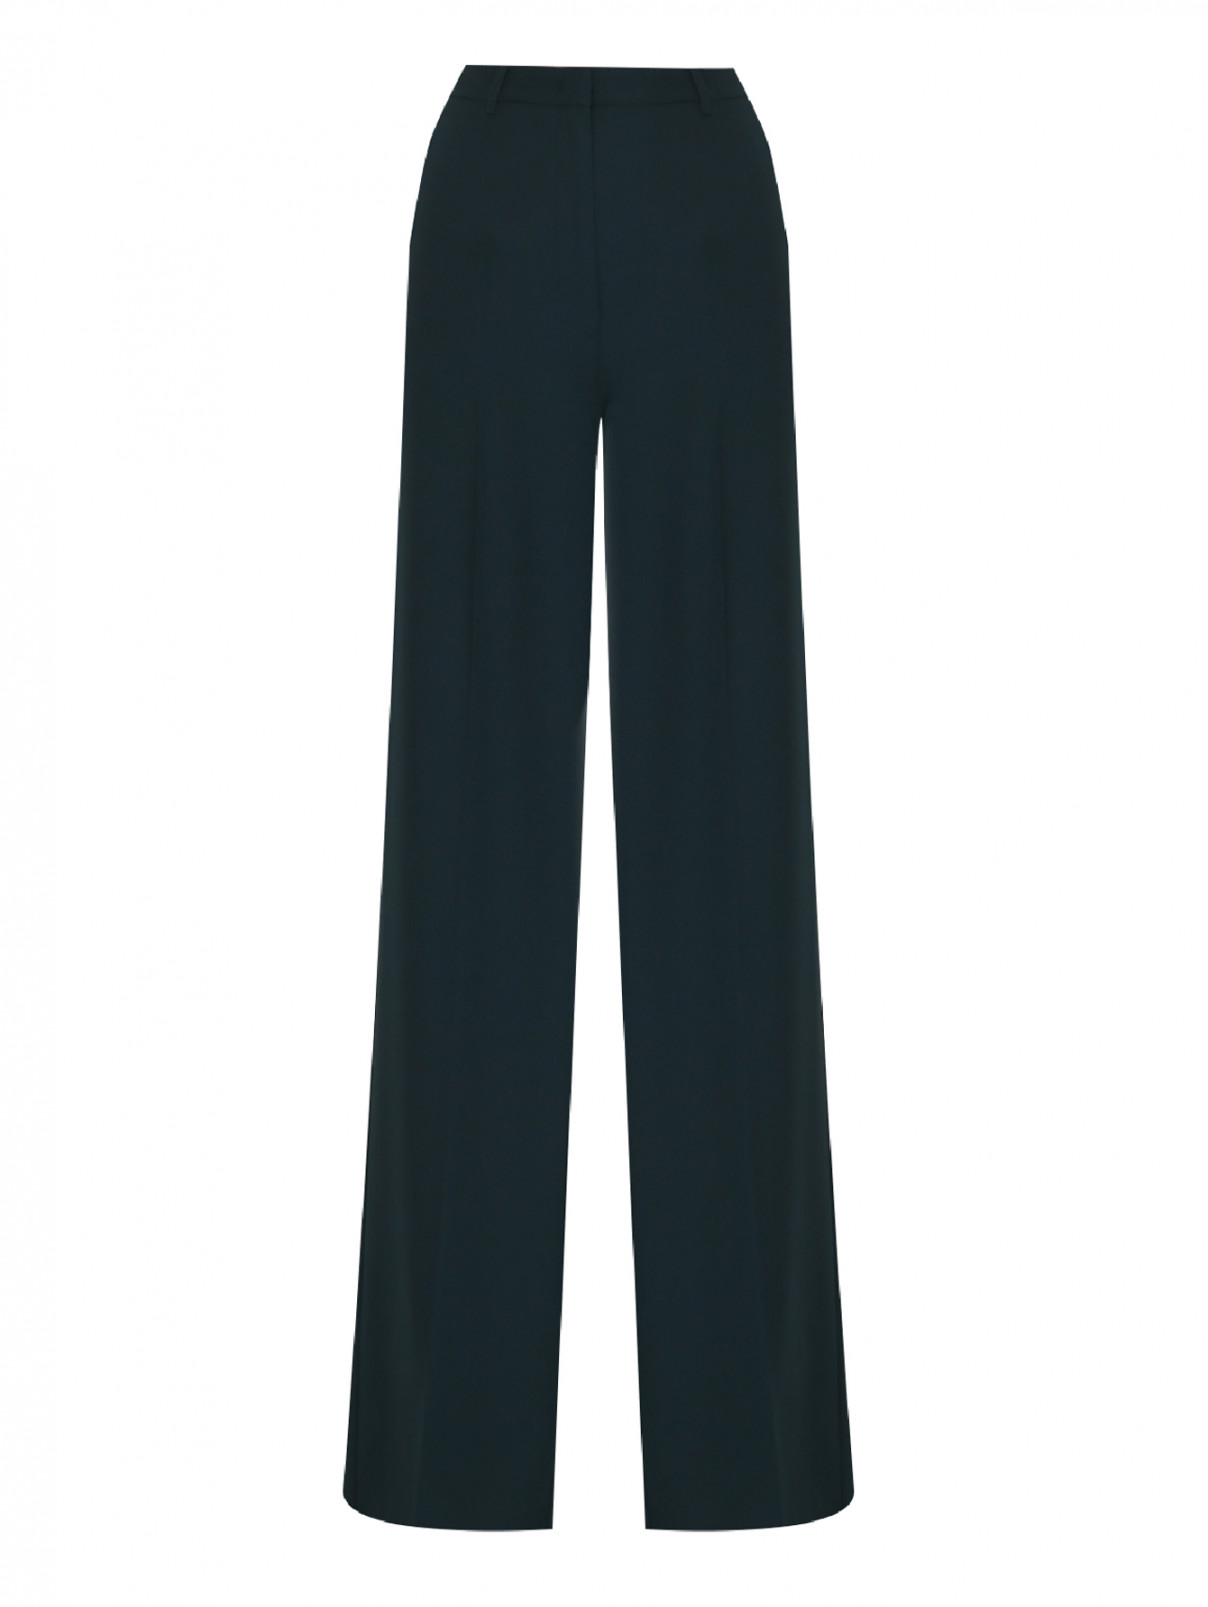 Широкие брюки со стрелками Max&Co  –  Общий вид  – Цвет:  Зеленый